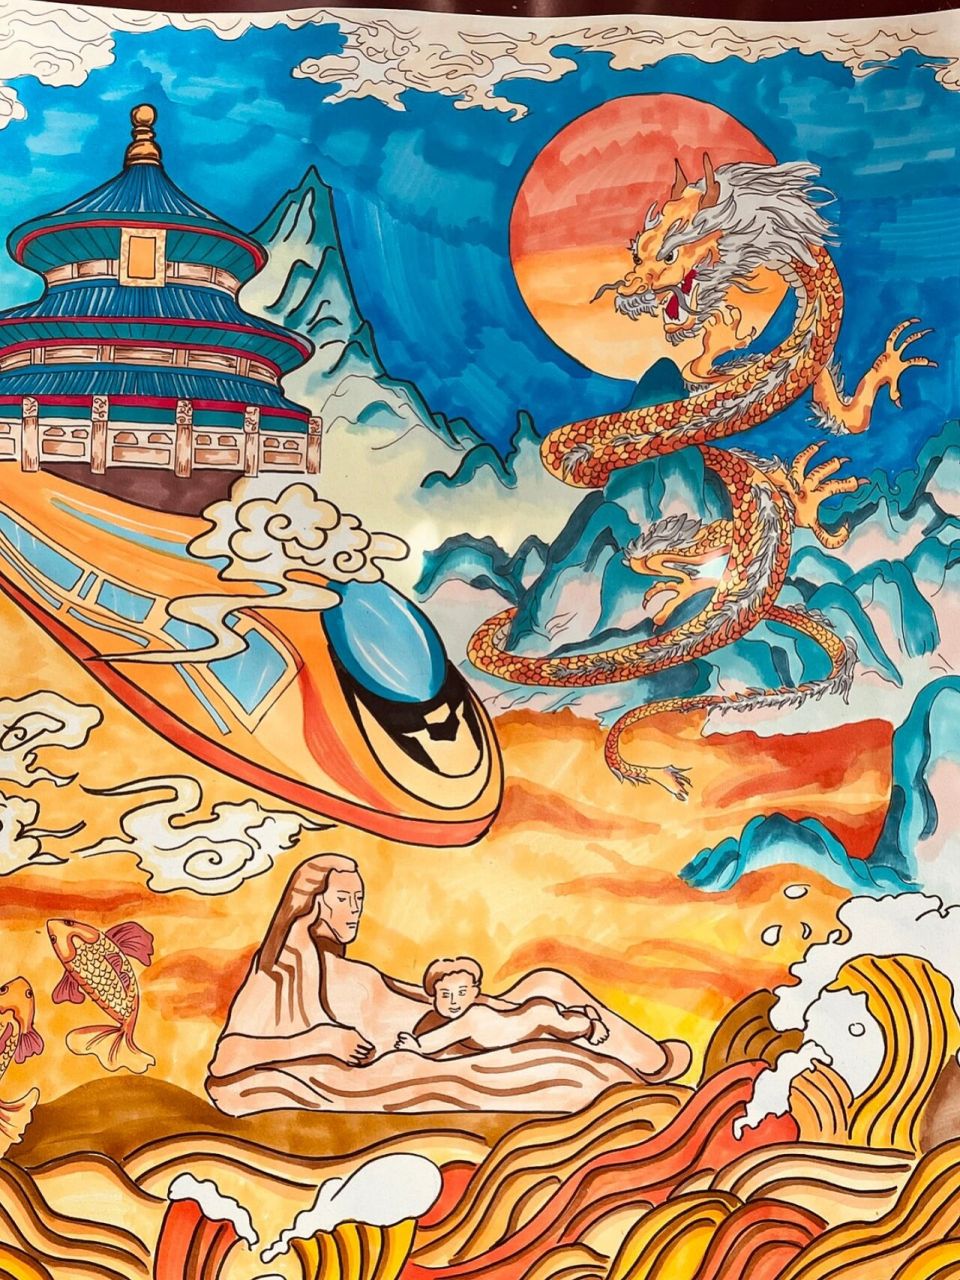 弘扬黄河文化绘画作品图片